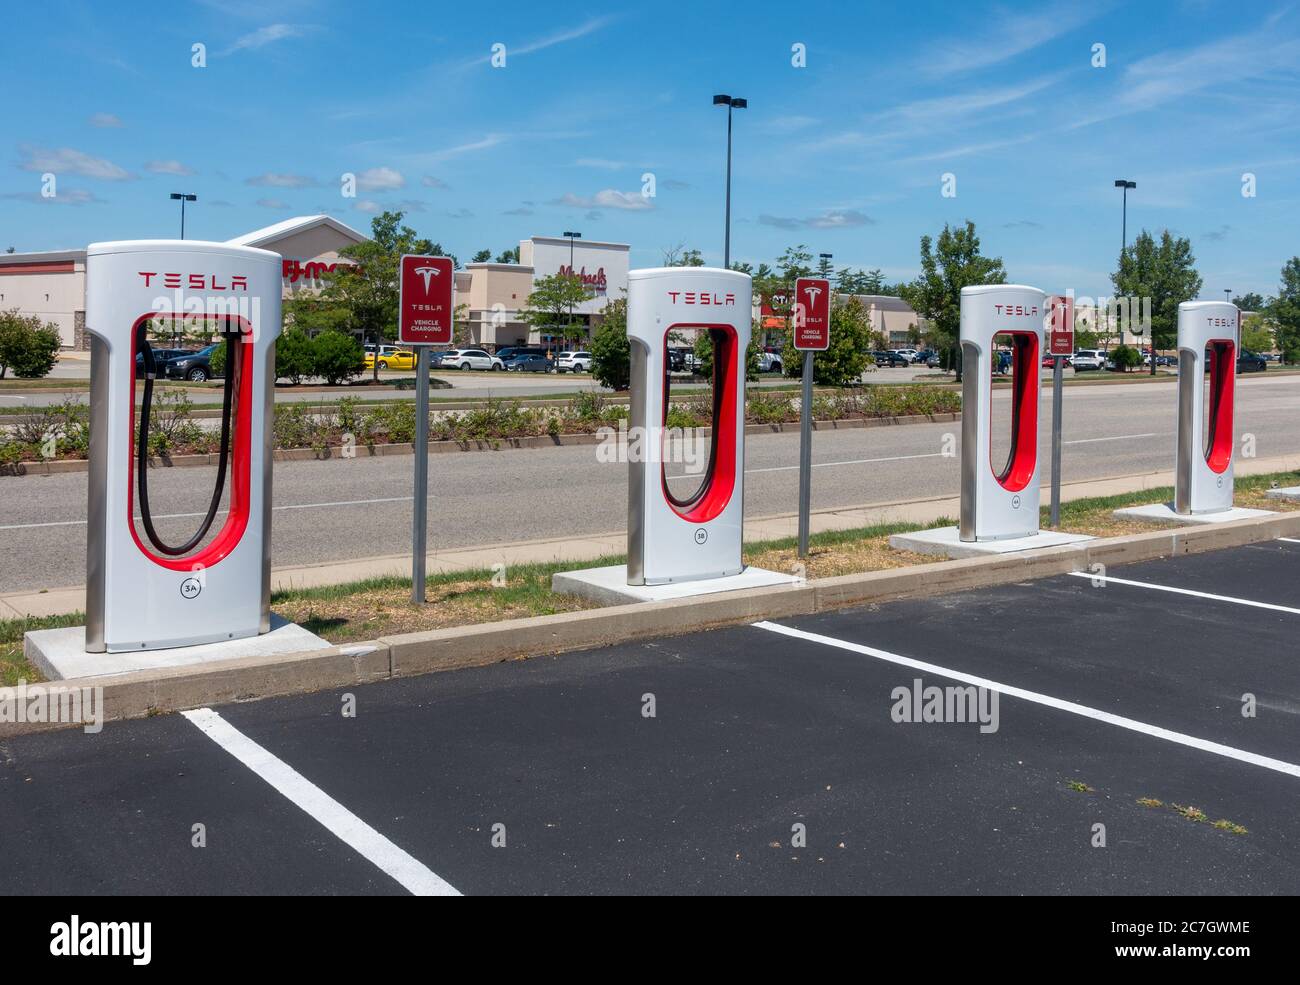 Estaciones de carga Tesla Supercharger en el estacionamiento del centro comercial en Wareham Crossing, Wareham, MA USA Foto de stock